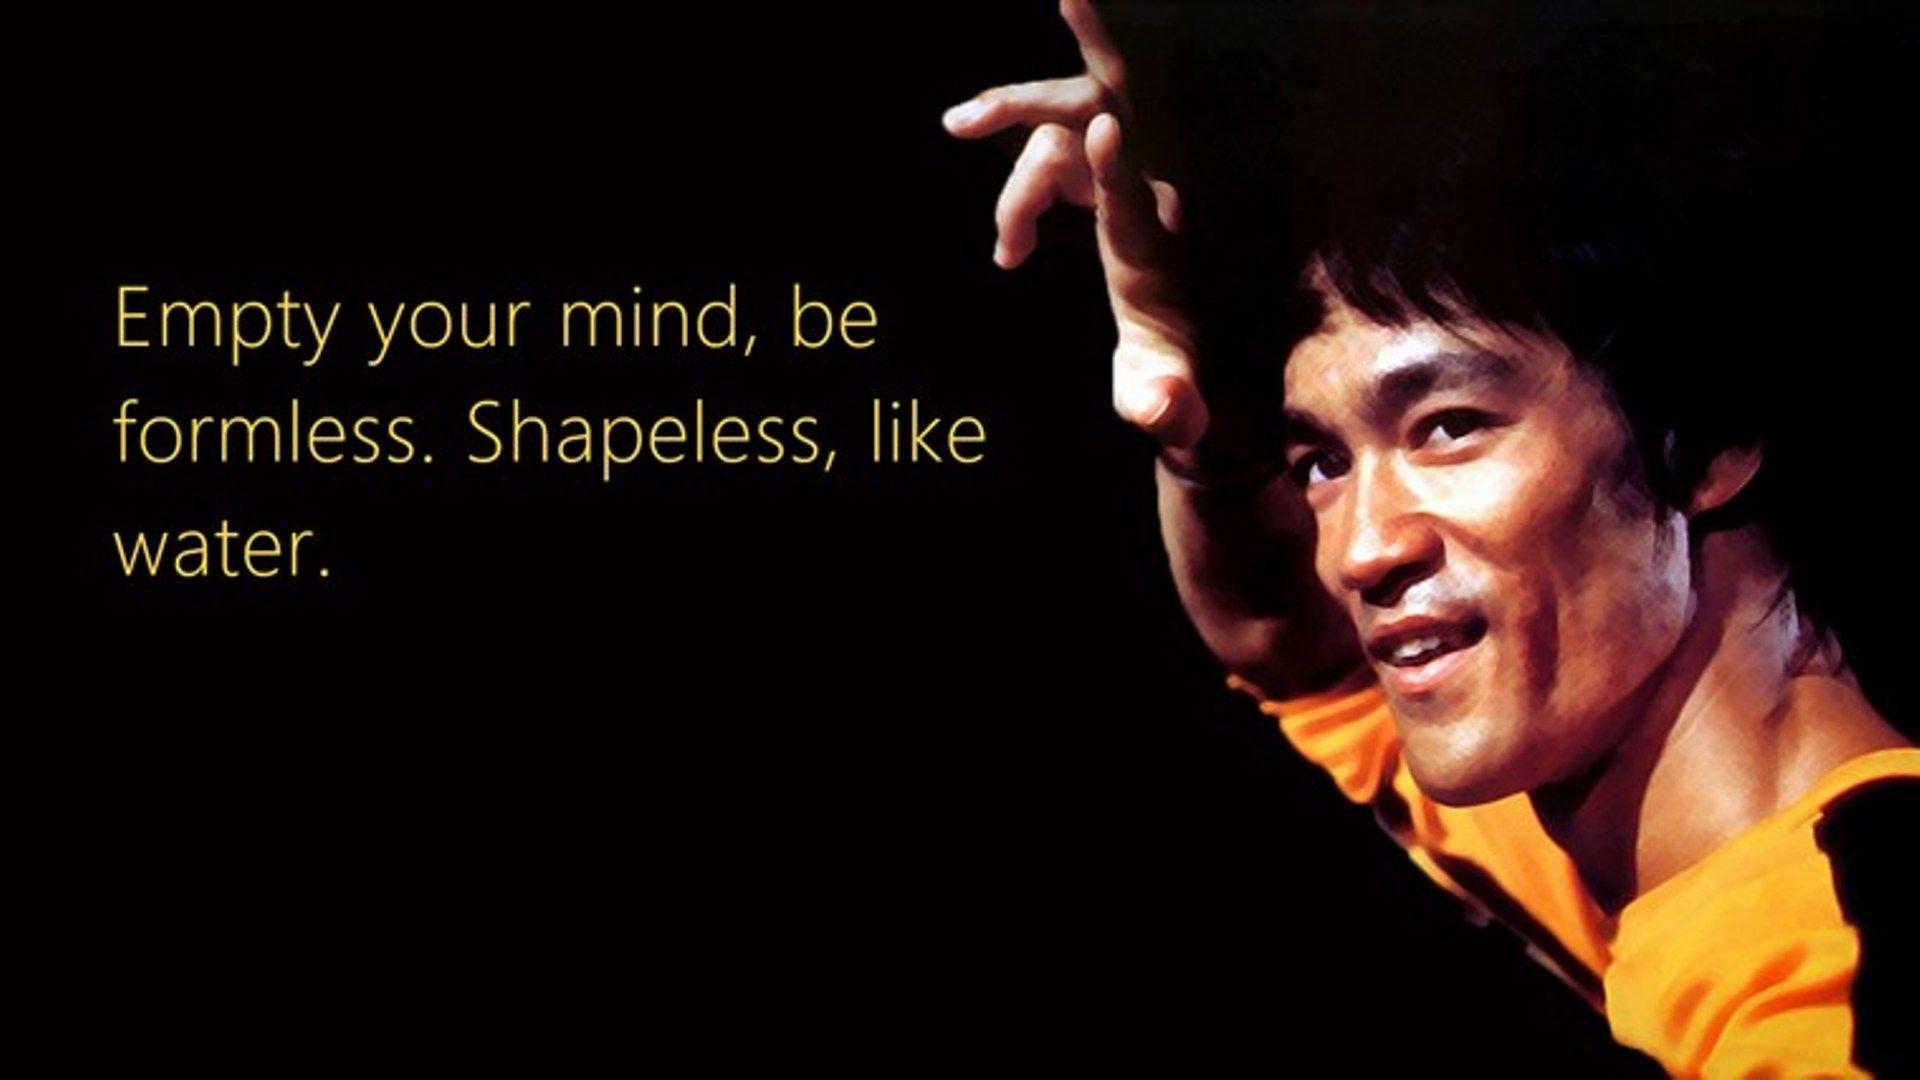 Bruce Lee Png Image Background  1080 X 1920 Wallpaper Motivation PNG Image   Transparent PNG Free Download on SeekPNG